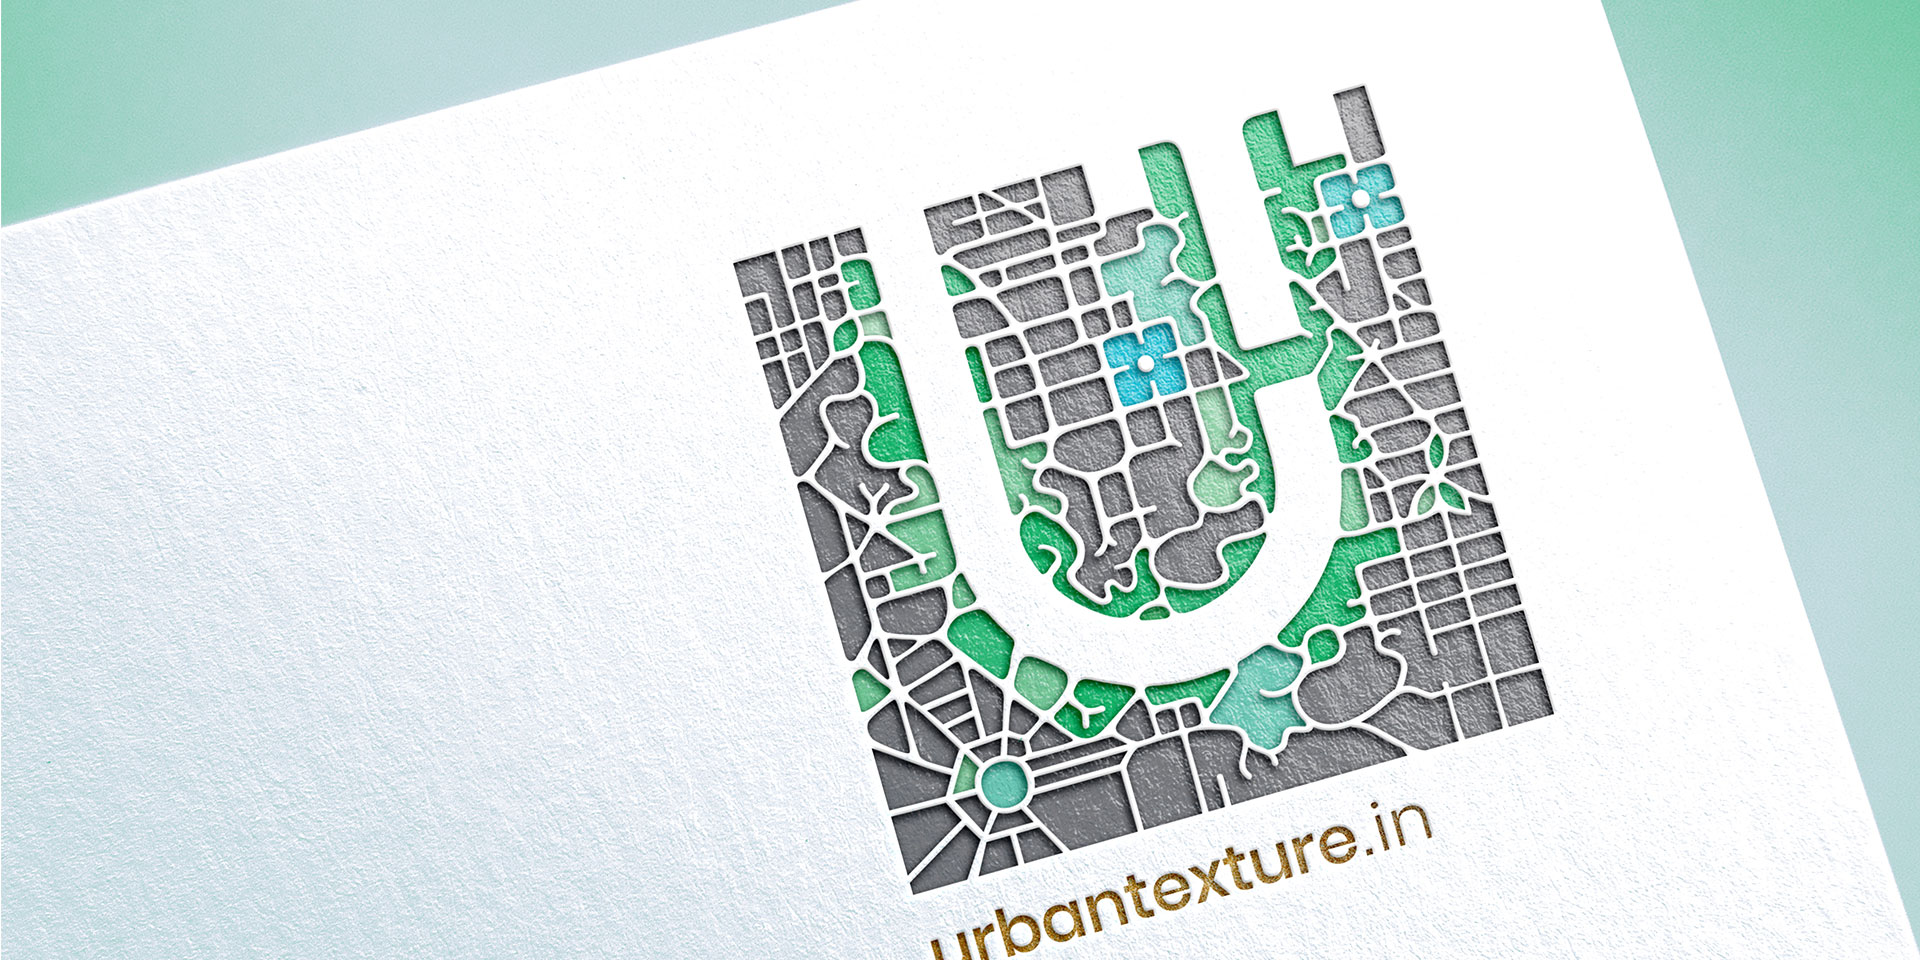 Urban Texture Architecture Design Studio India - Identity Design Print